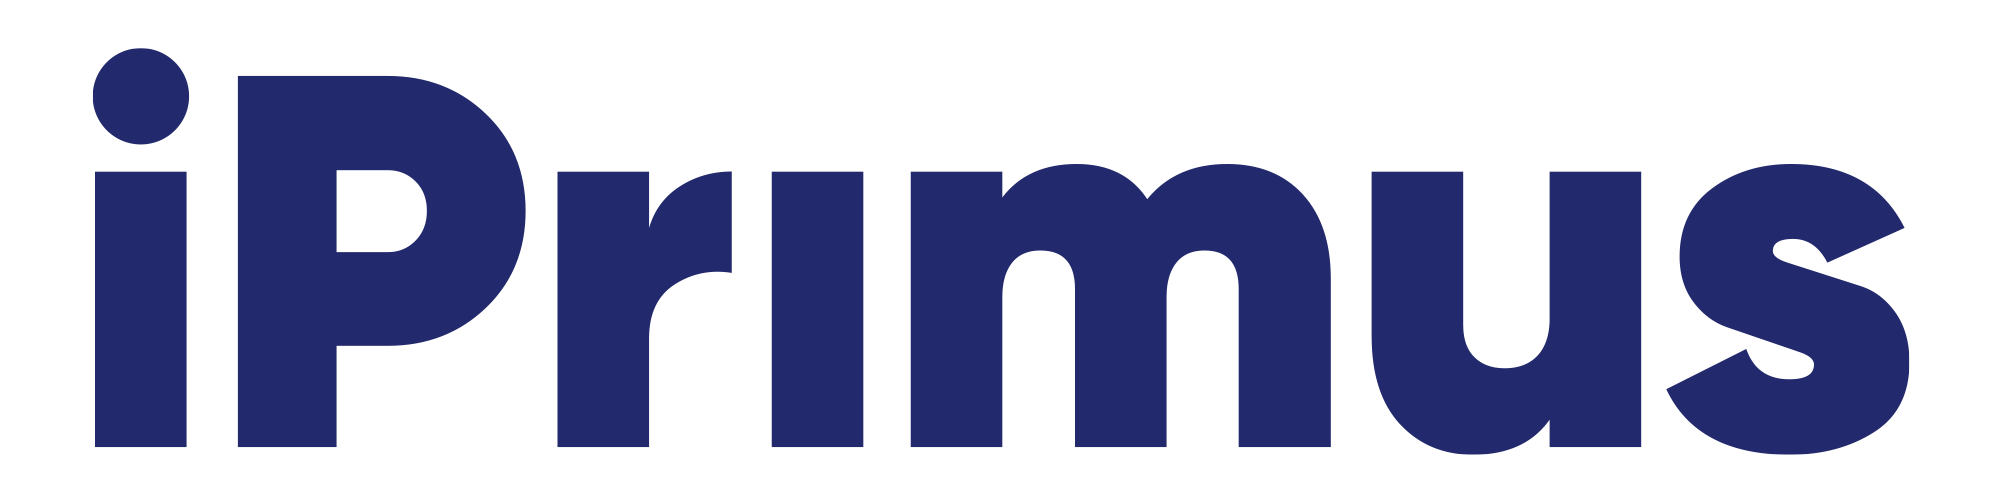 iPrimus Logo